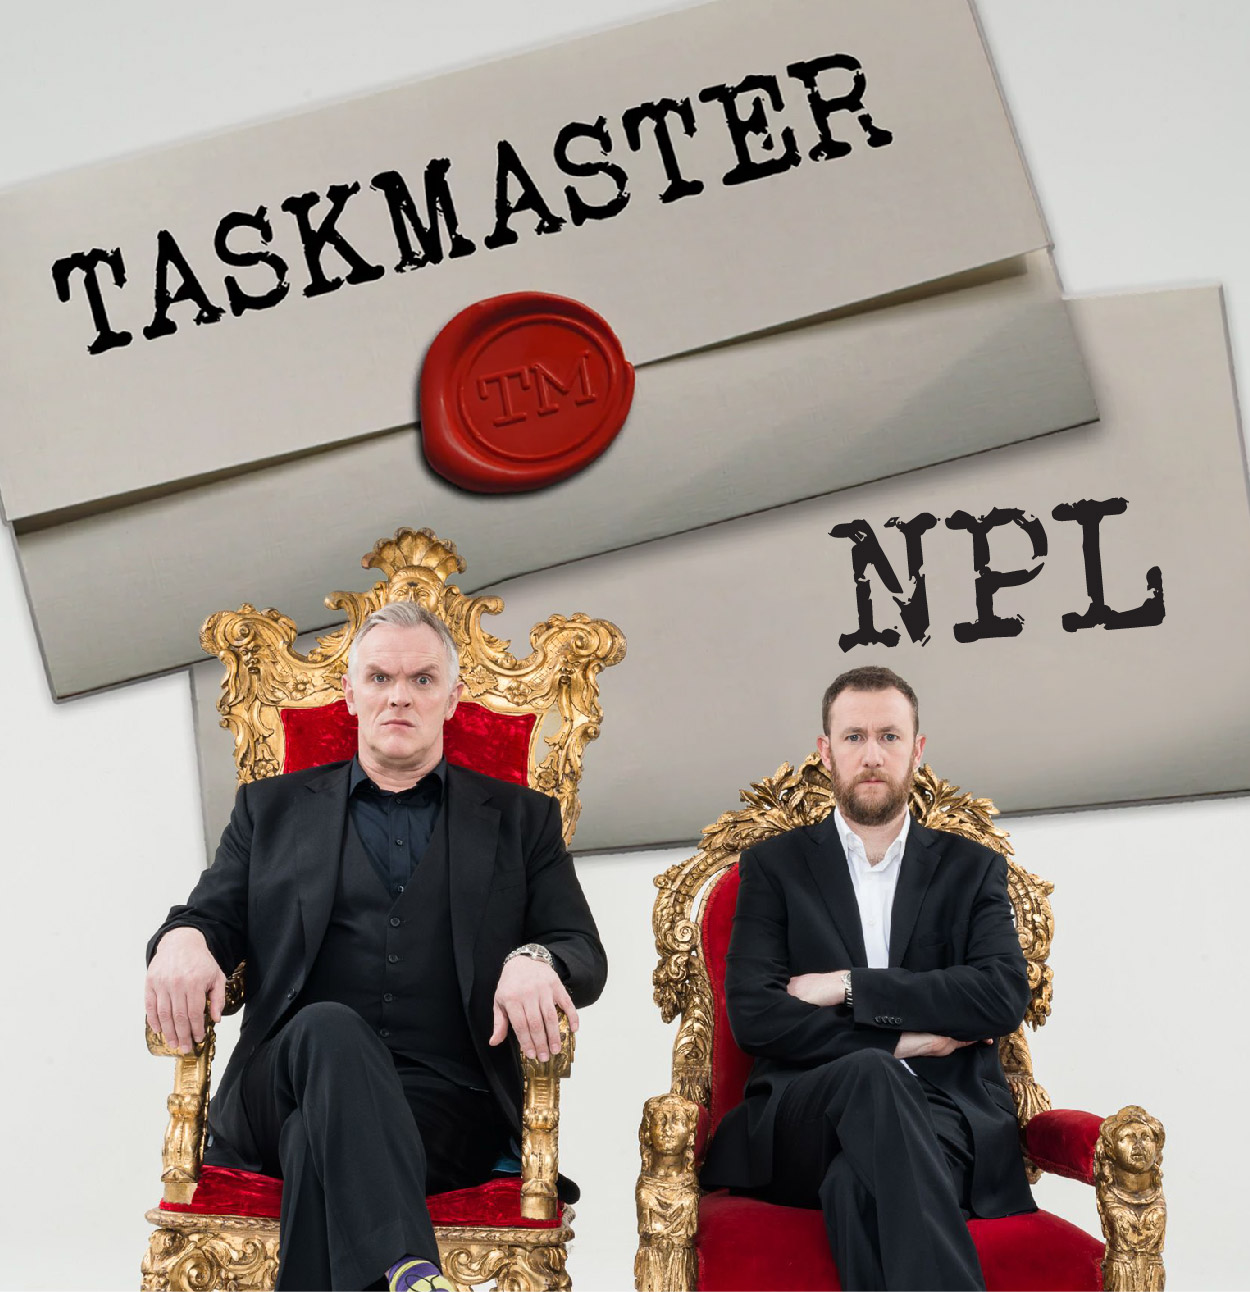 Taskmaster NPL